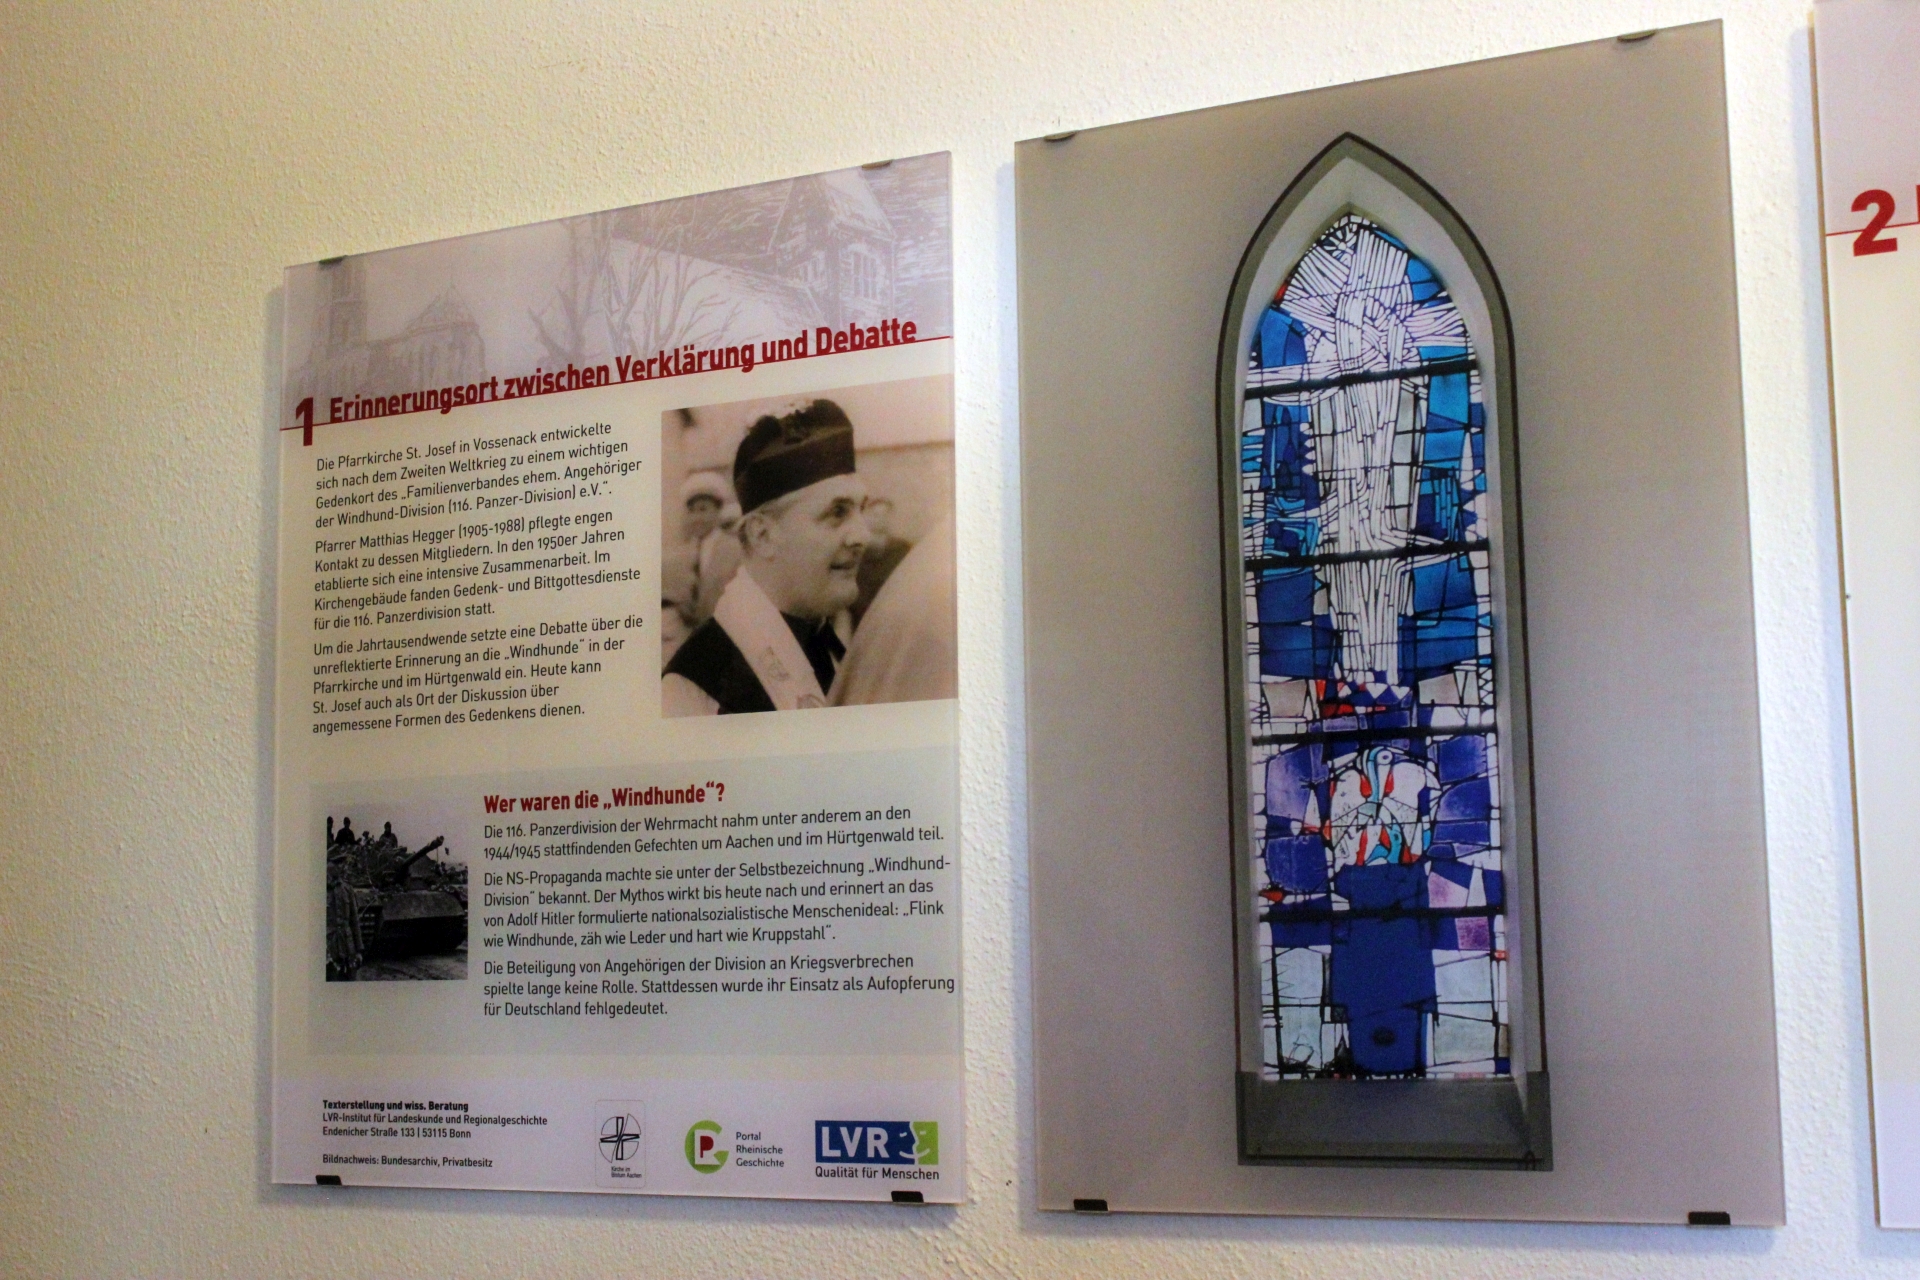 Mit den angebrachten Infotafeln erhalten die Gedenktafeln eine fundierte historische Einordnung. (c) Bistum Aachen / Anja Klingbeil